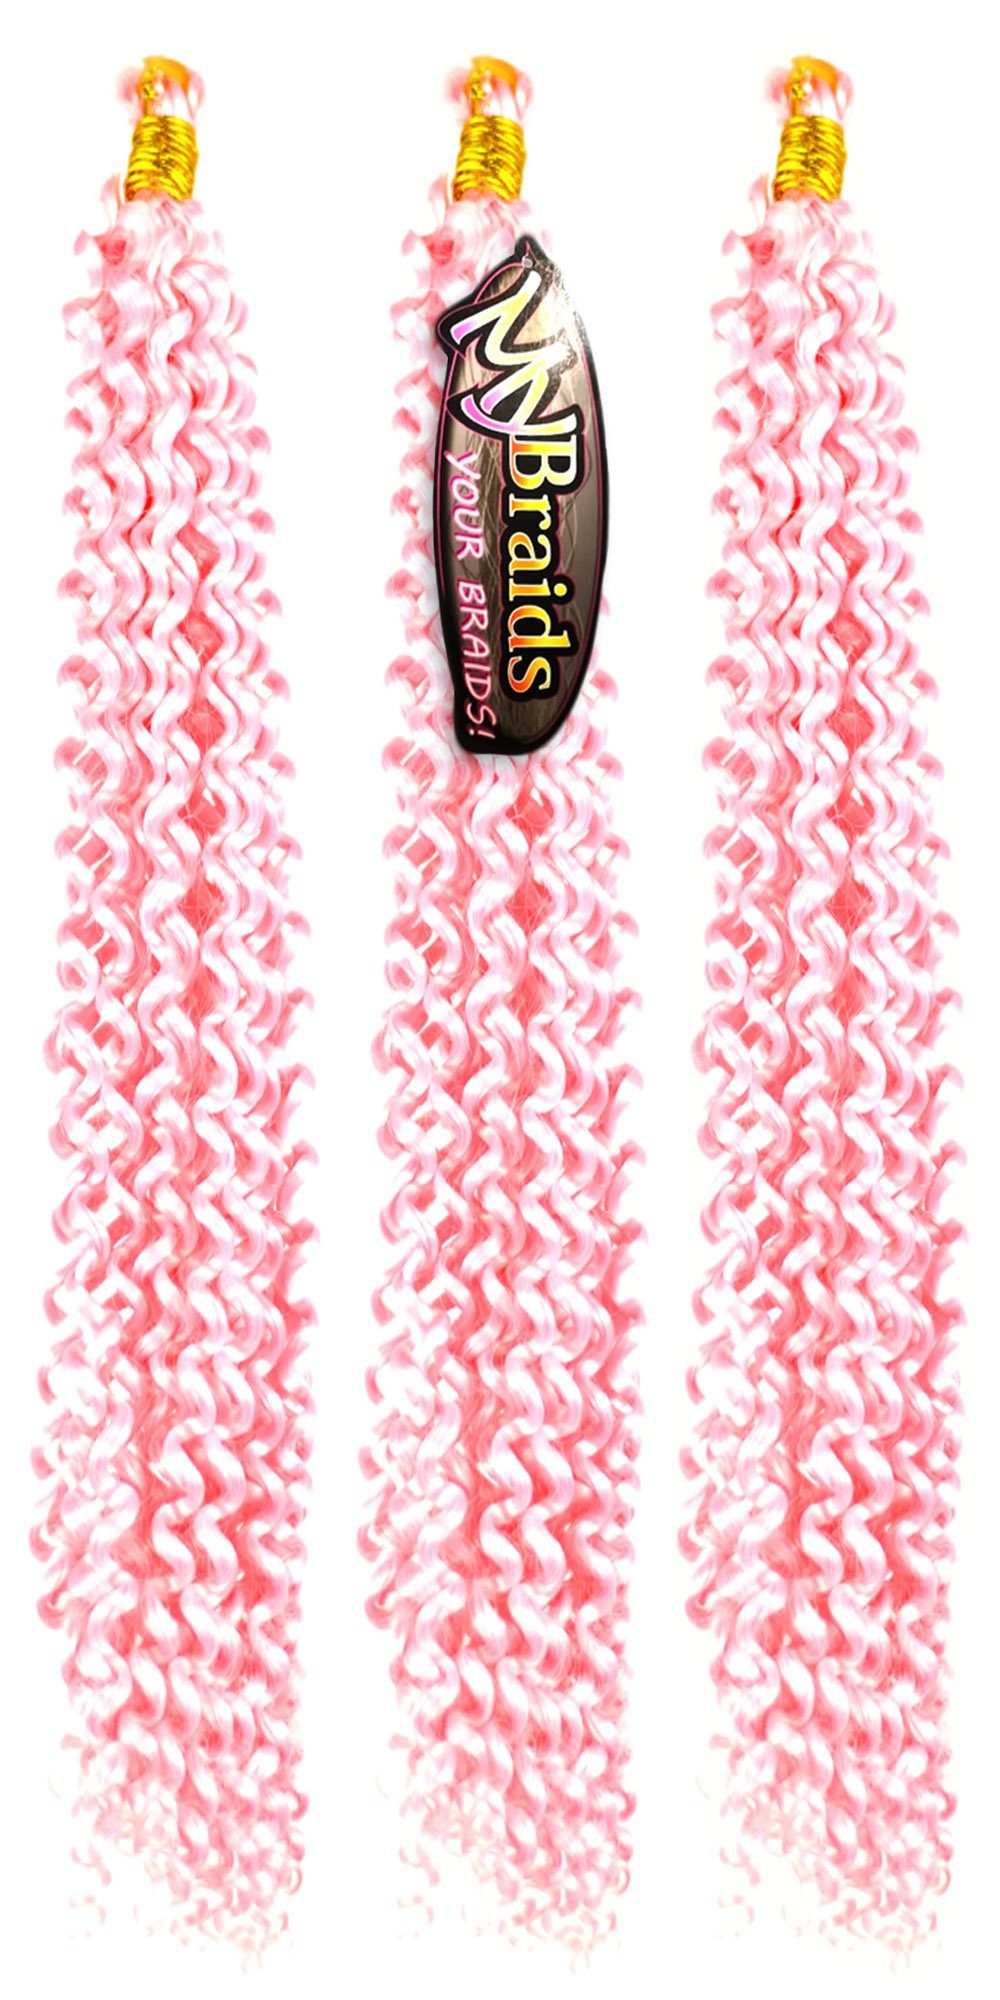 MyBraids YOUR BRAIDS! Kunsthaar-Extension Deep Wave Crochet Braids 3er Pack Flechthaar Zöpfe Wellig 11-W Hellrosa